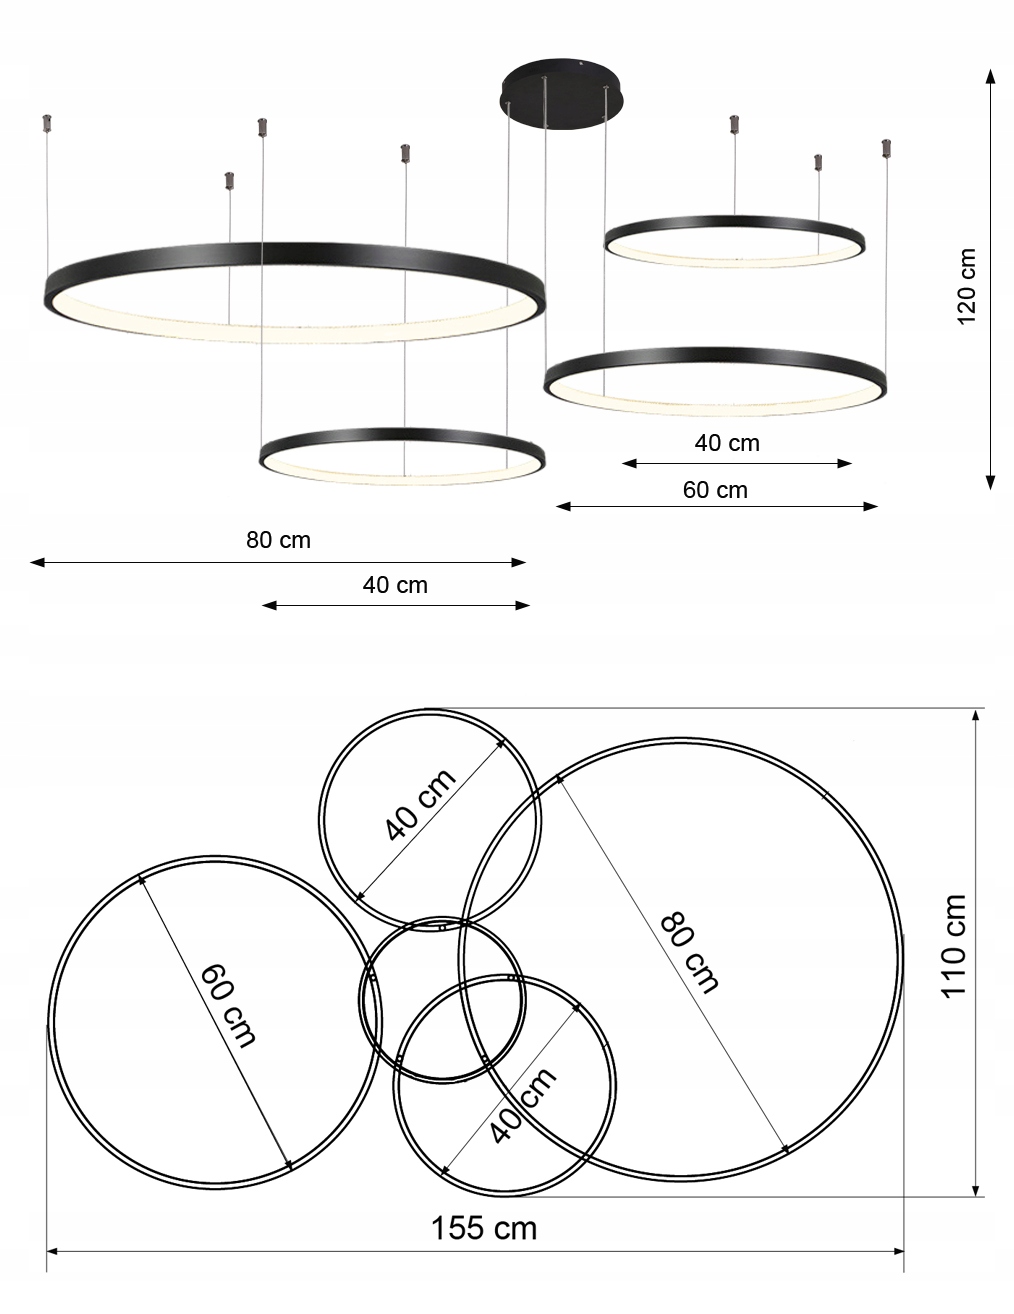 Lampa wisząca czarne okręgi na linkach - żyrandol LED Wobako Silva EX V - wymiary.